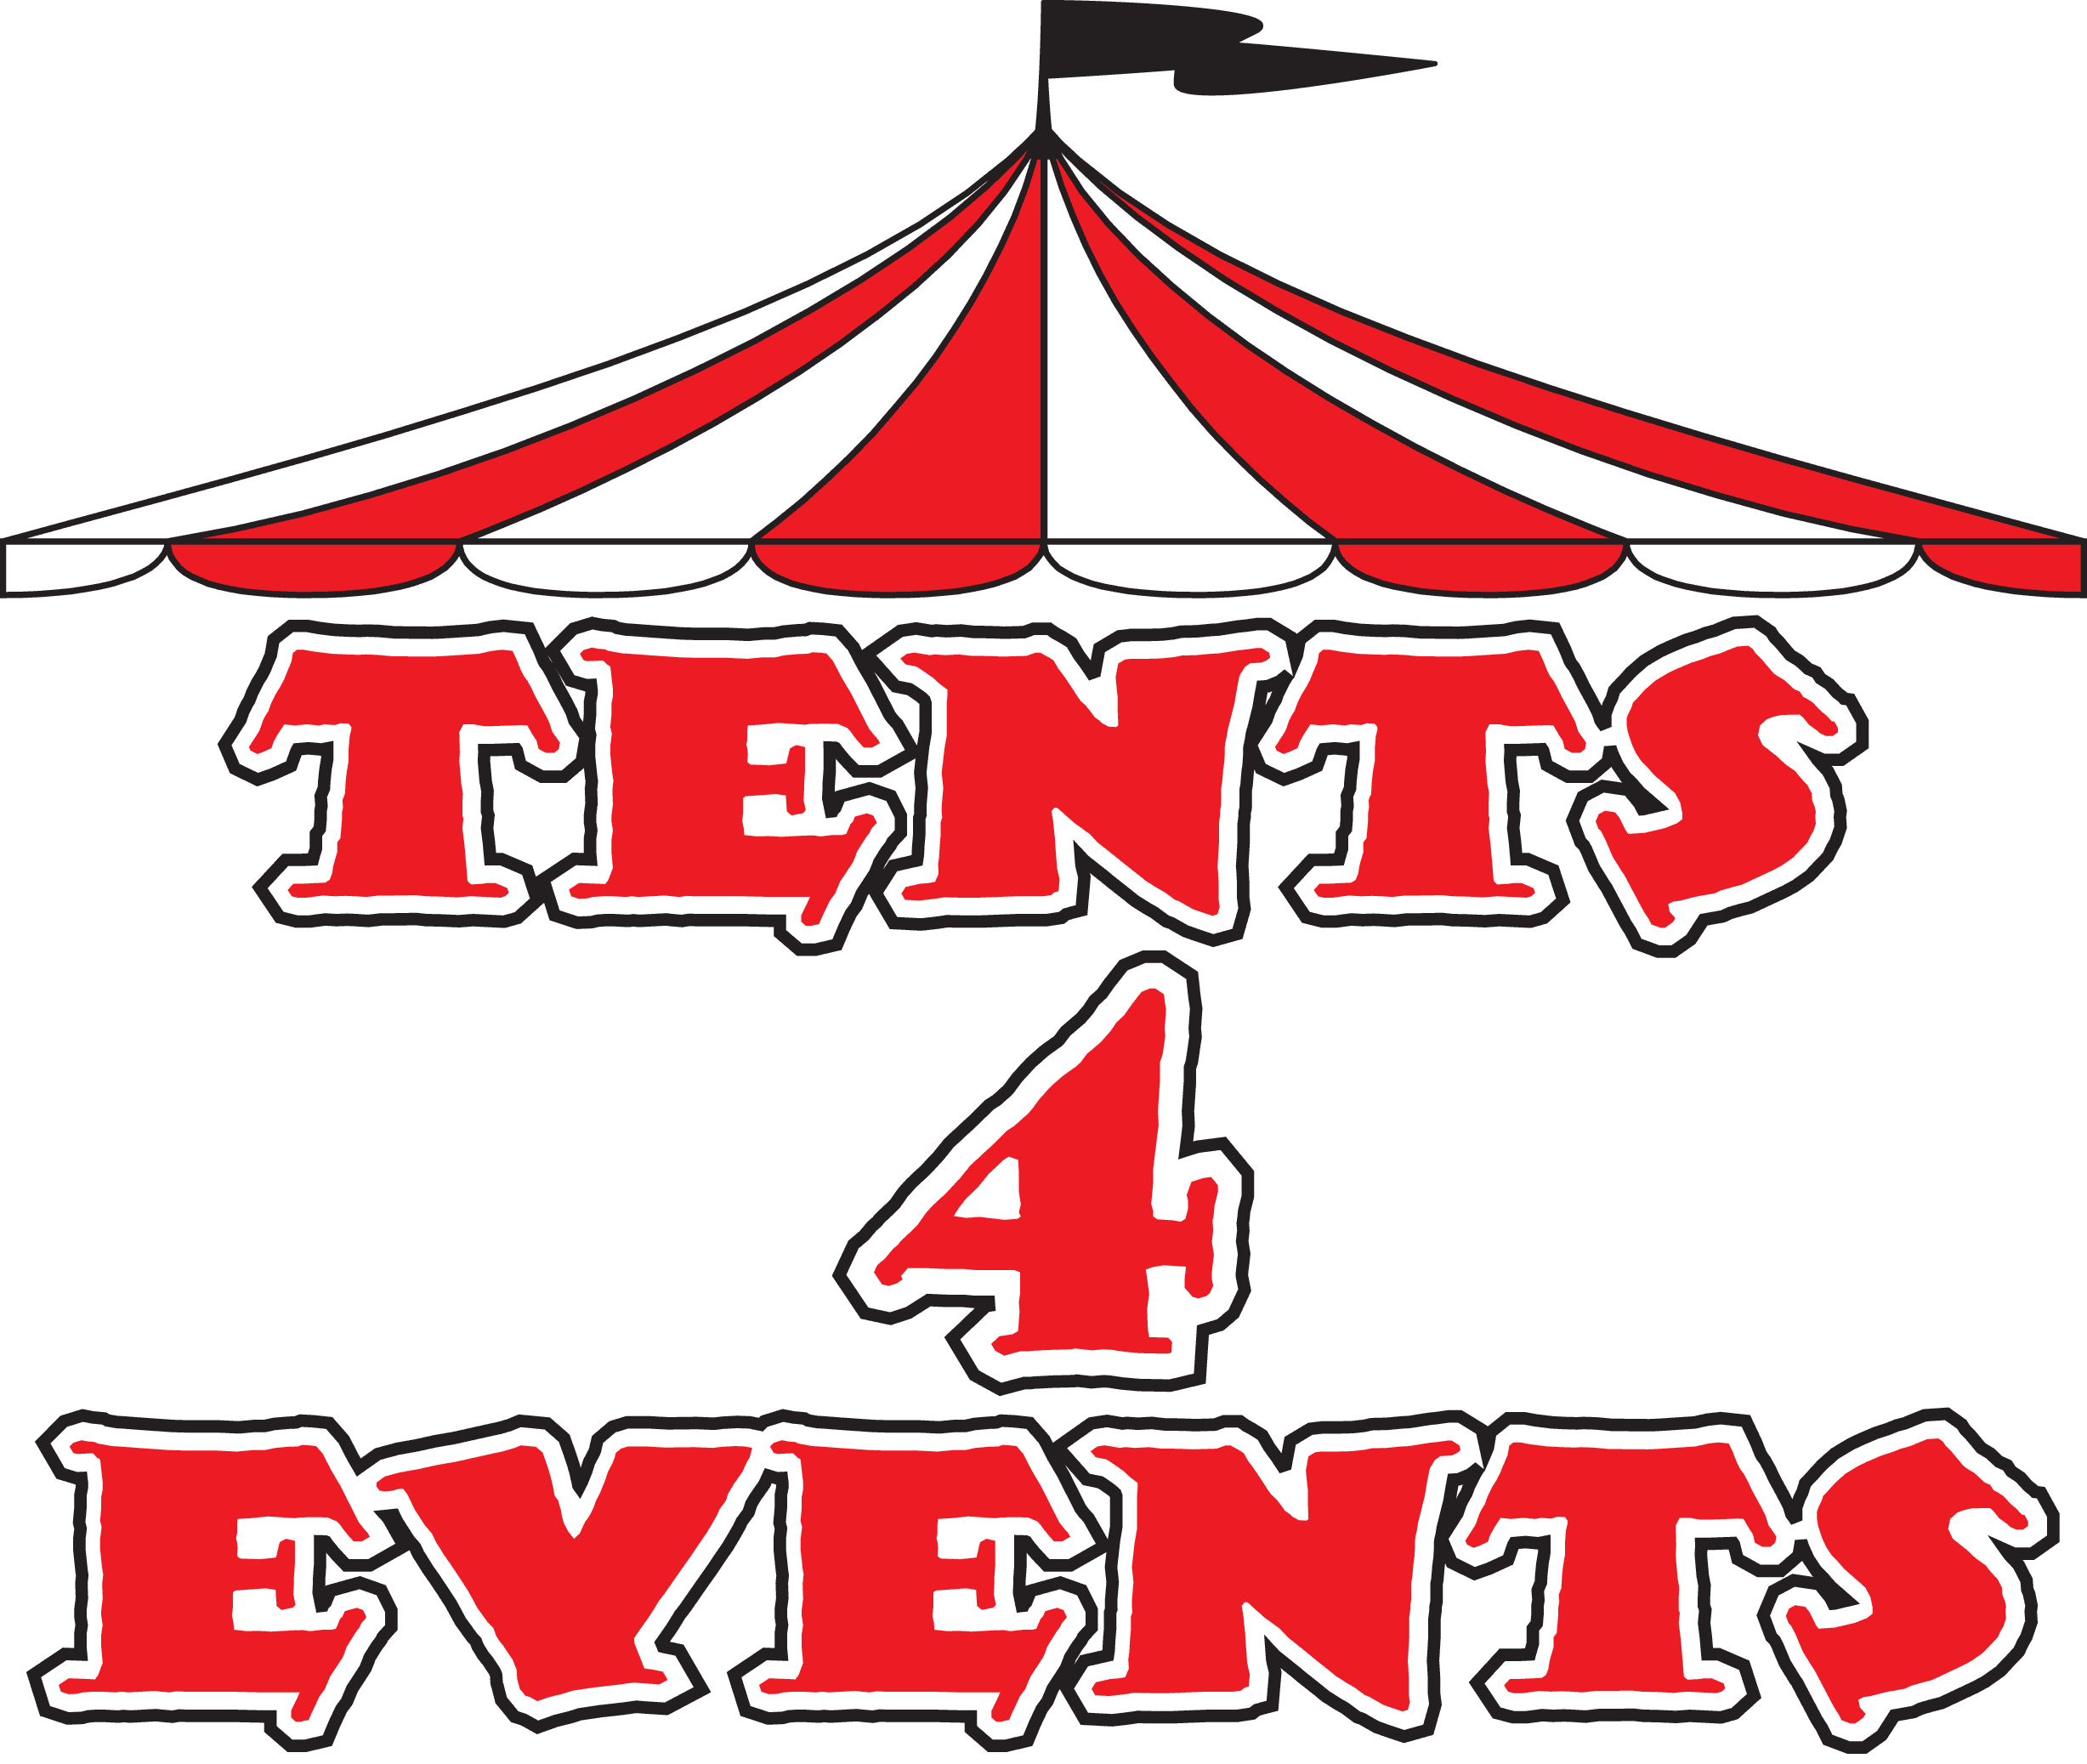 Tents 4 Events LLC - logo